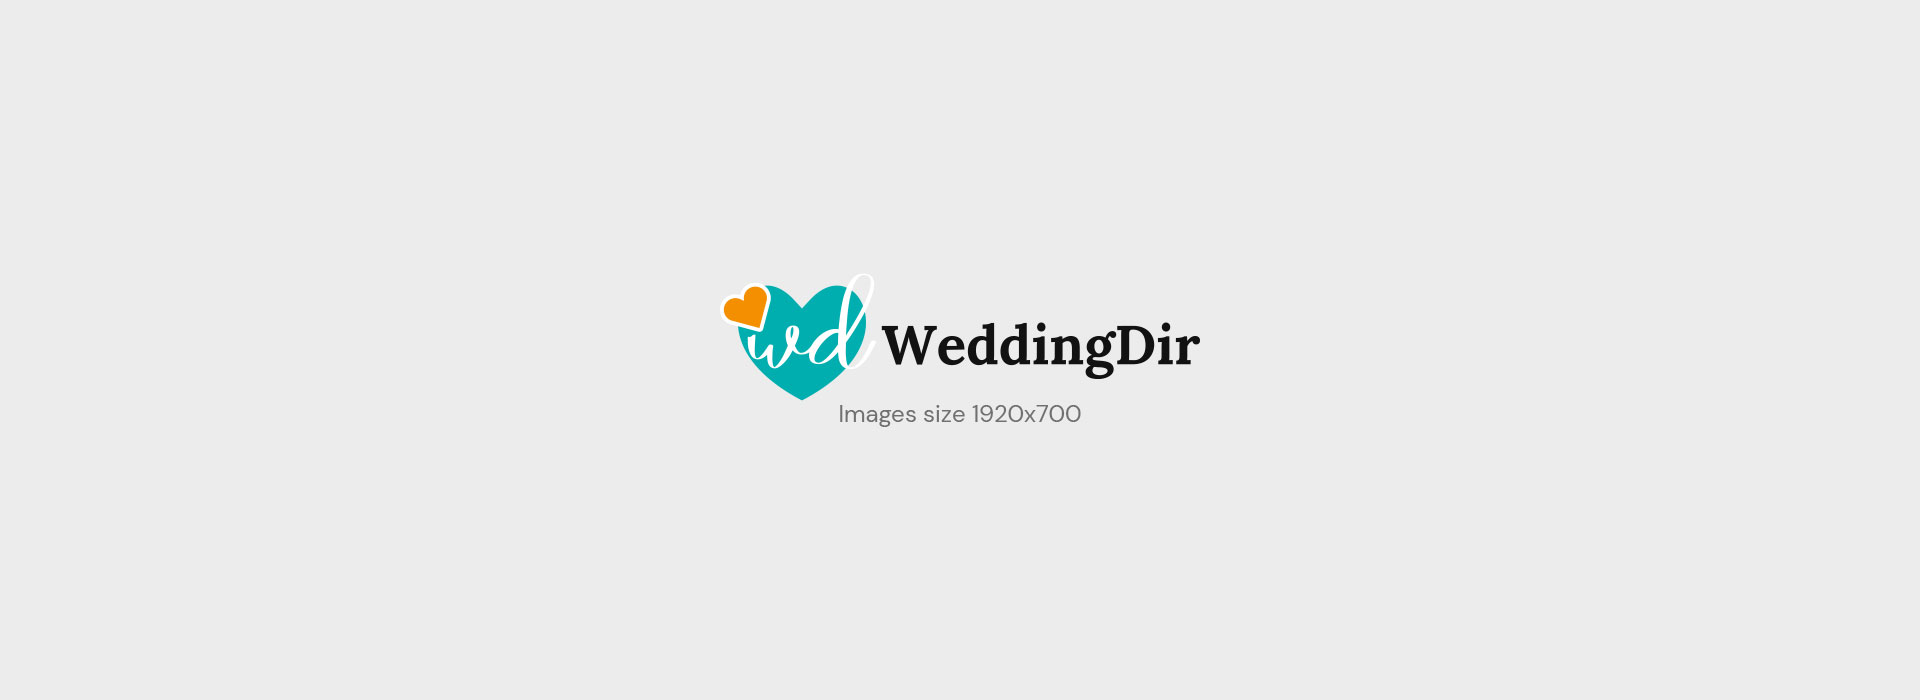 Dress Category Vendor Wedding Dress weddingdir slider 4